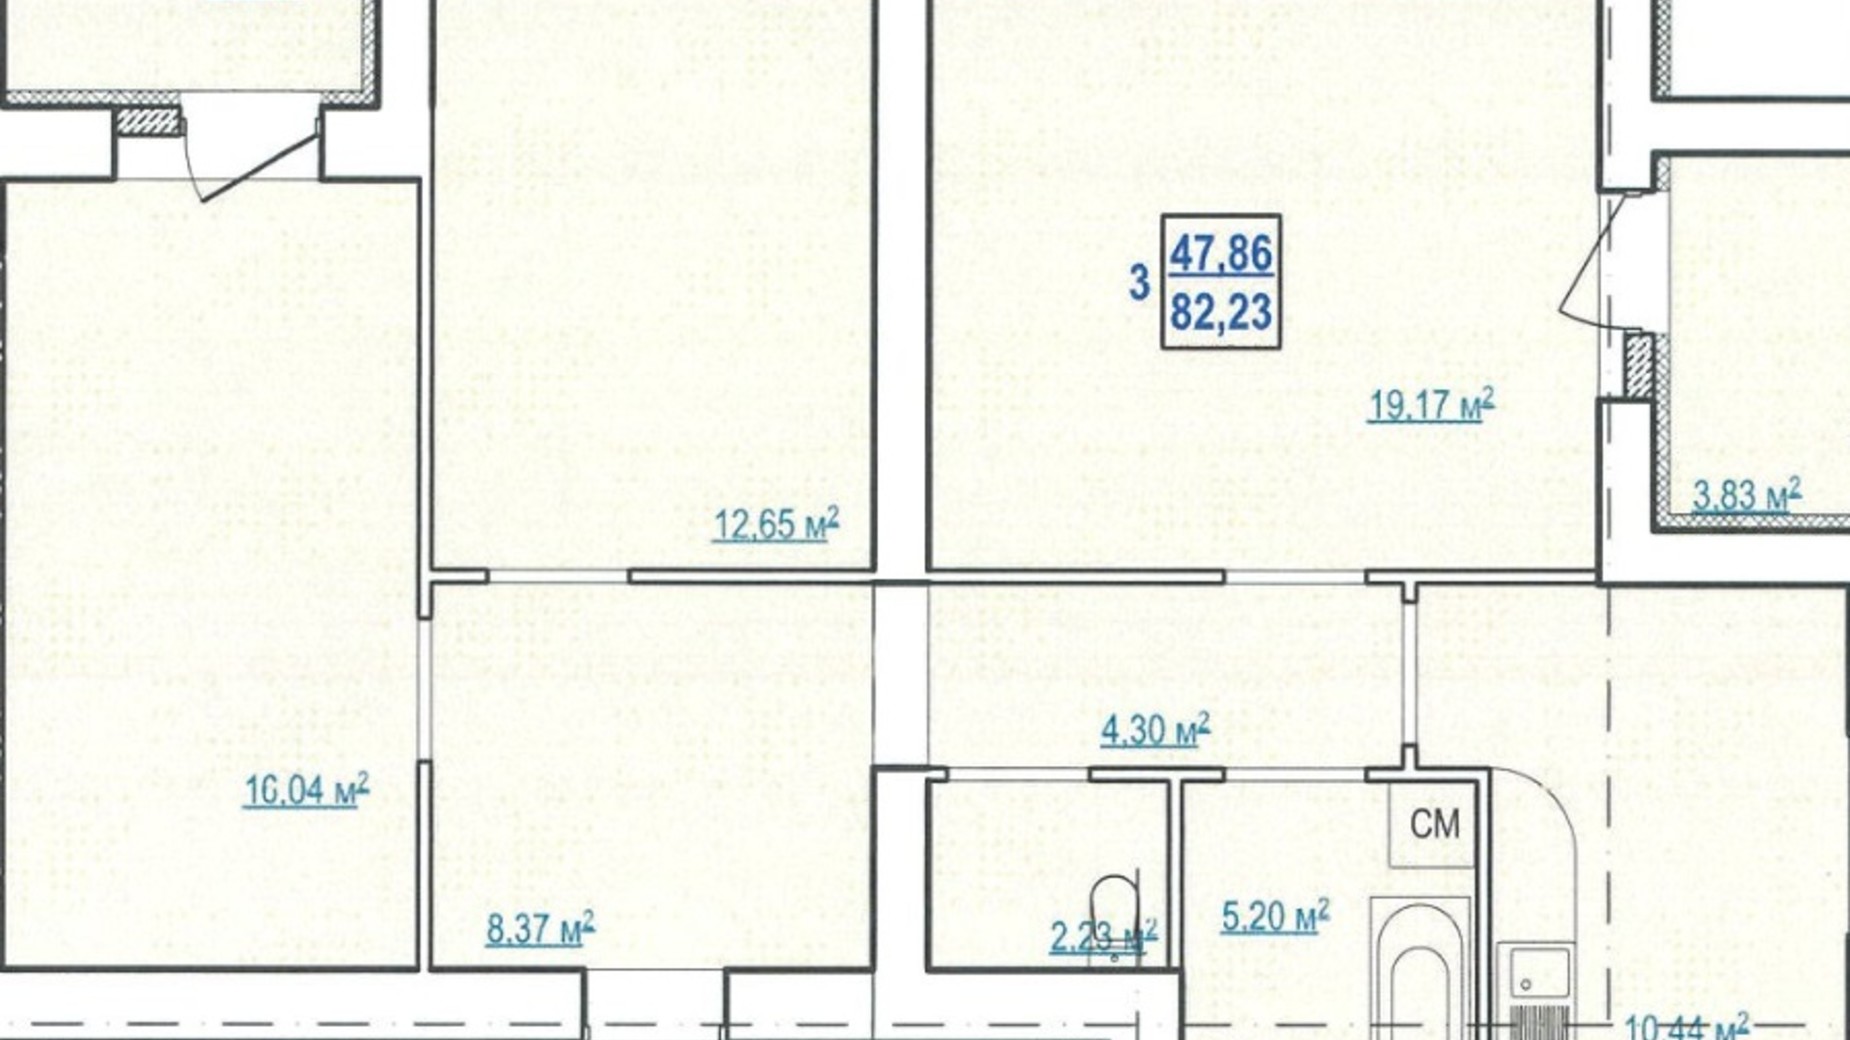 Планування 3-кімнатної квартири в ЖК вул. Чоботарська, 80 82.23 м², фото 345438